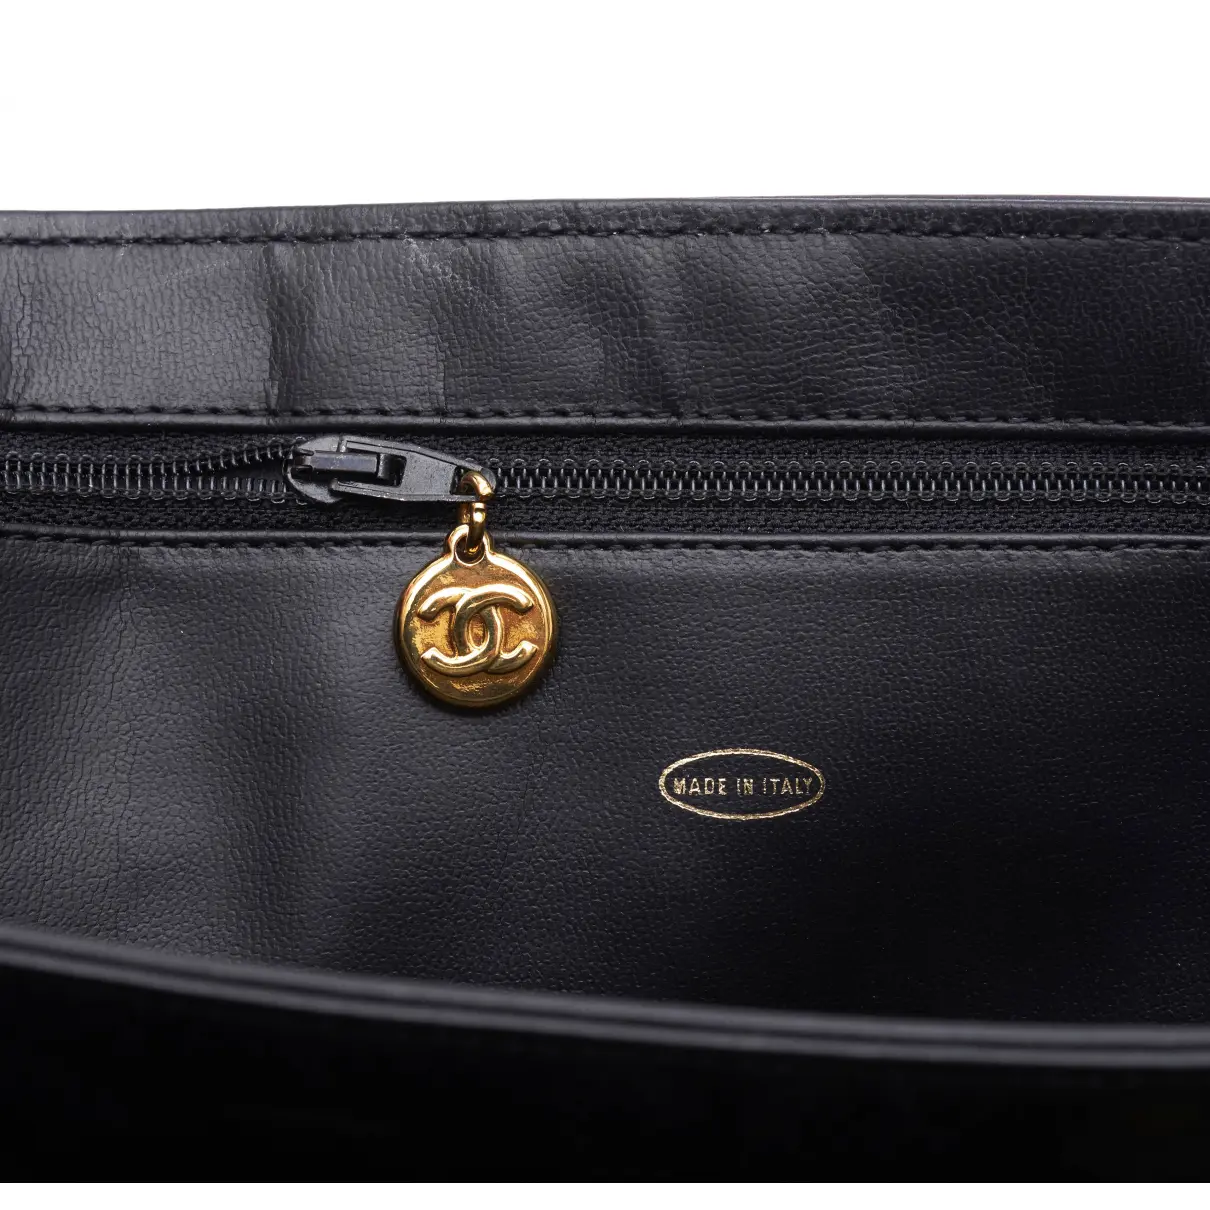 Black Leather Handbag Business Affinity Chanel - Vintage